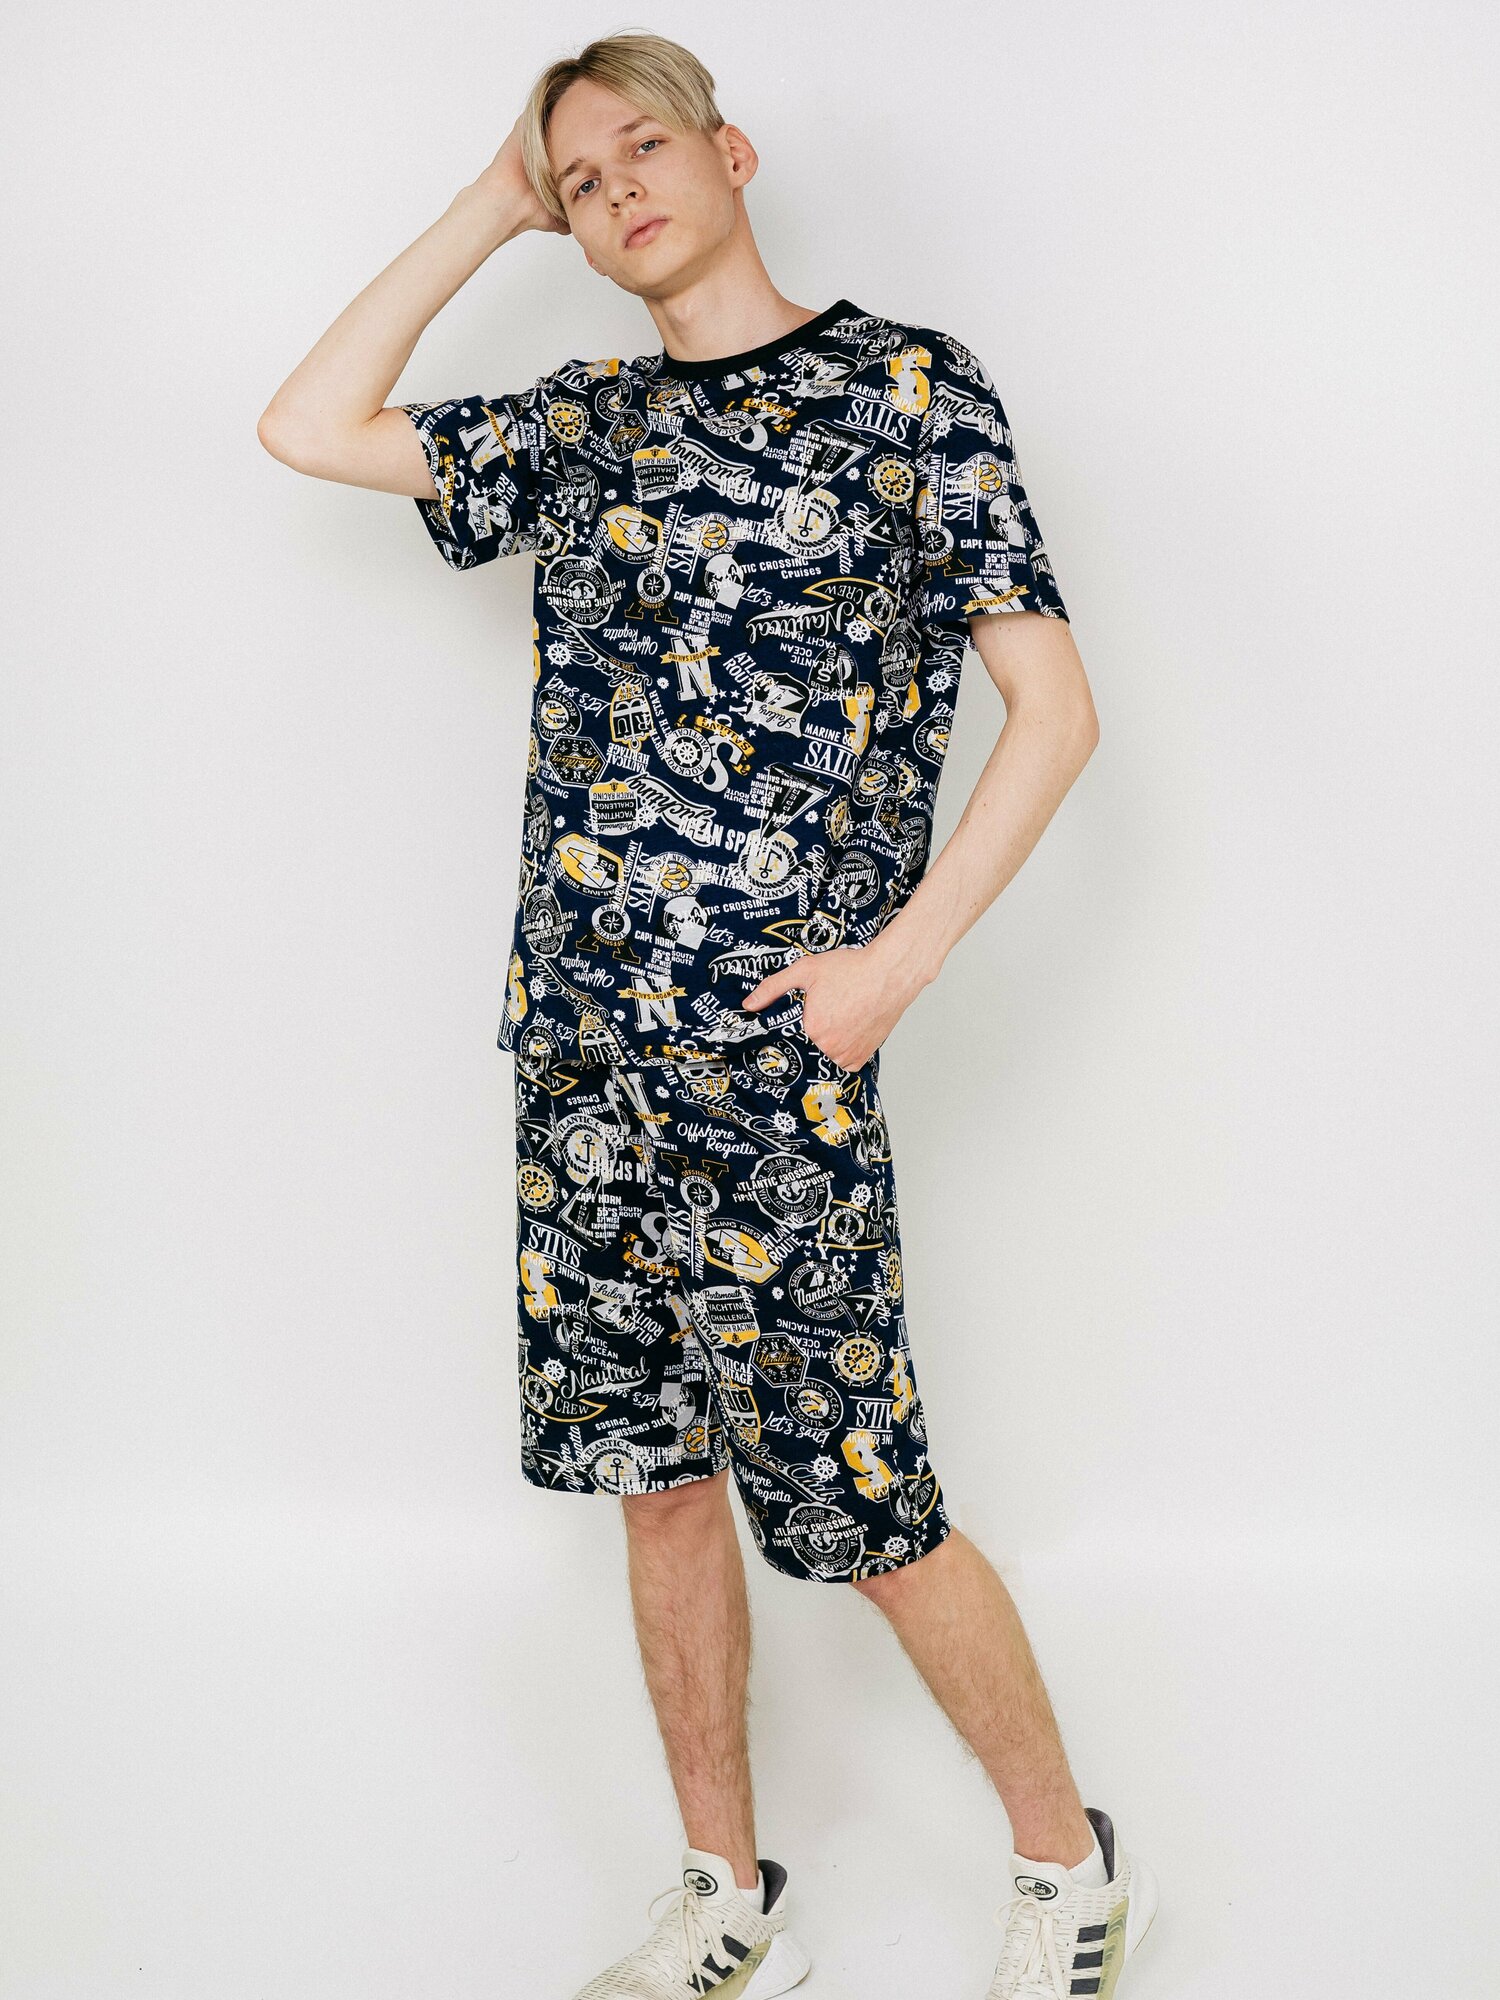 Мужская пижама, мужской пижамный комплект ARISTARHOV, Футболка + Шорты, Синий серый, размер 48 - фотография № 7